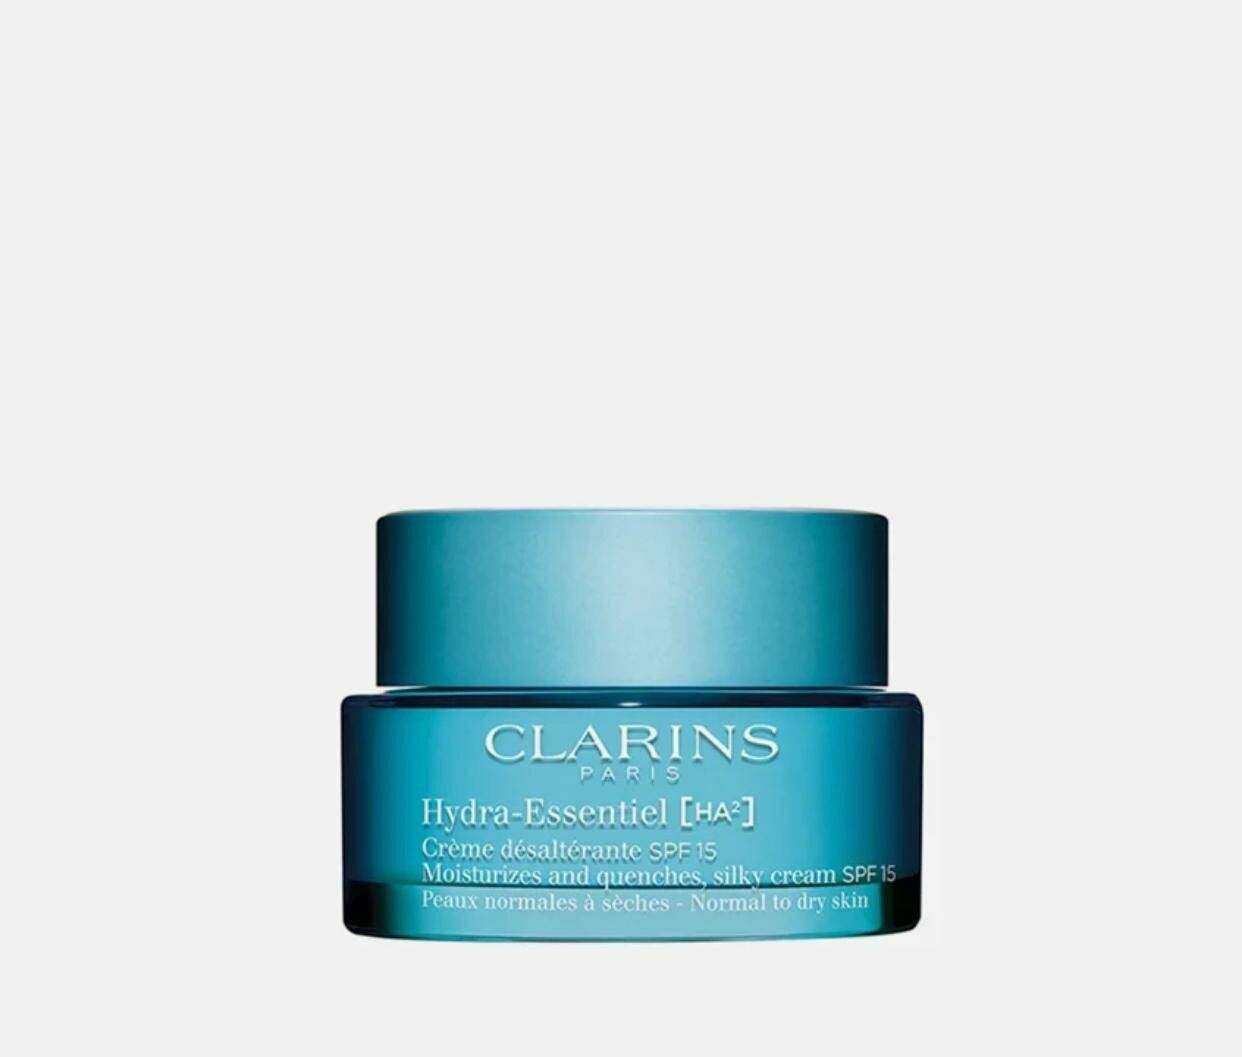 CLARINS Hydra-Essentiel Дневной крем для нормальной и сухой кожи SPF 15 увлажняющий, 50 мл